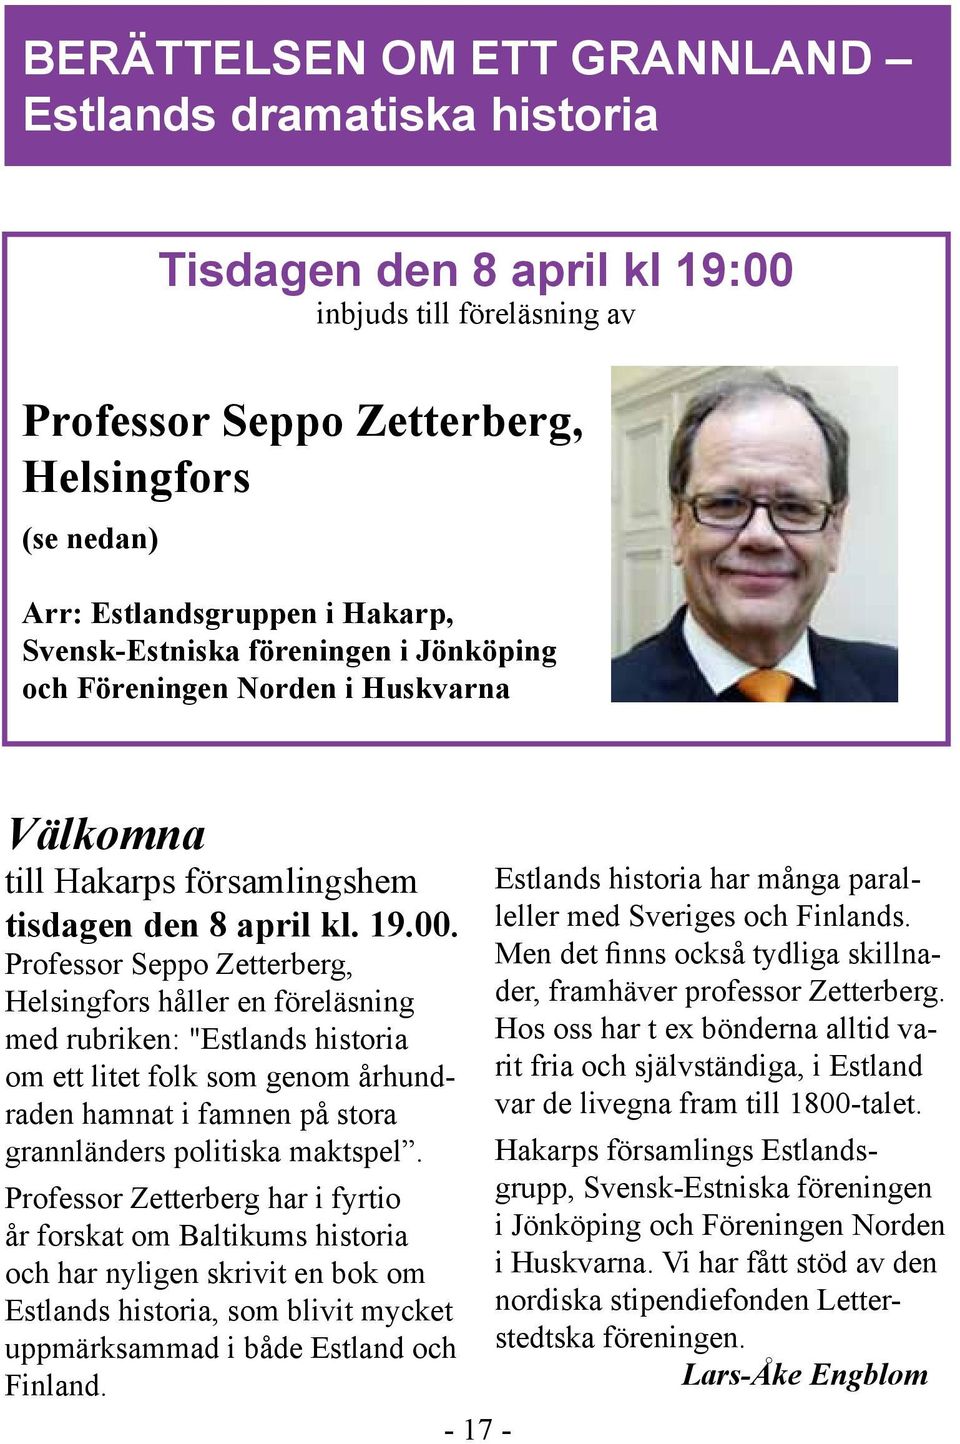 Professor Seppo Zetterberg, Helsingfors håller en föreläsning med rubriken: "Estlands historia om ett litet folk som genom århundraden hamnat i famnen på stora grannländers politiska maktspel.